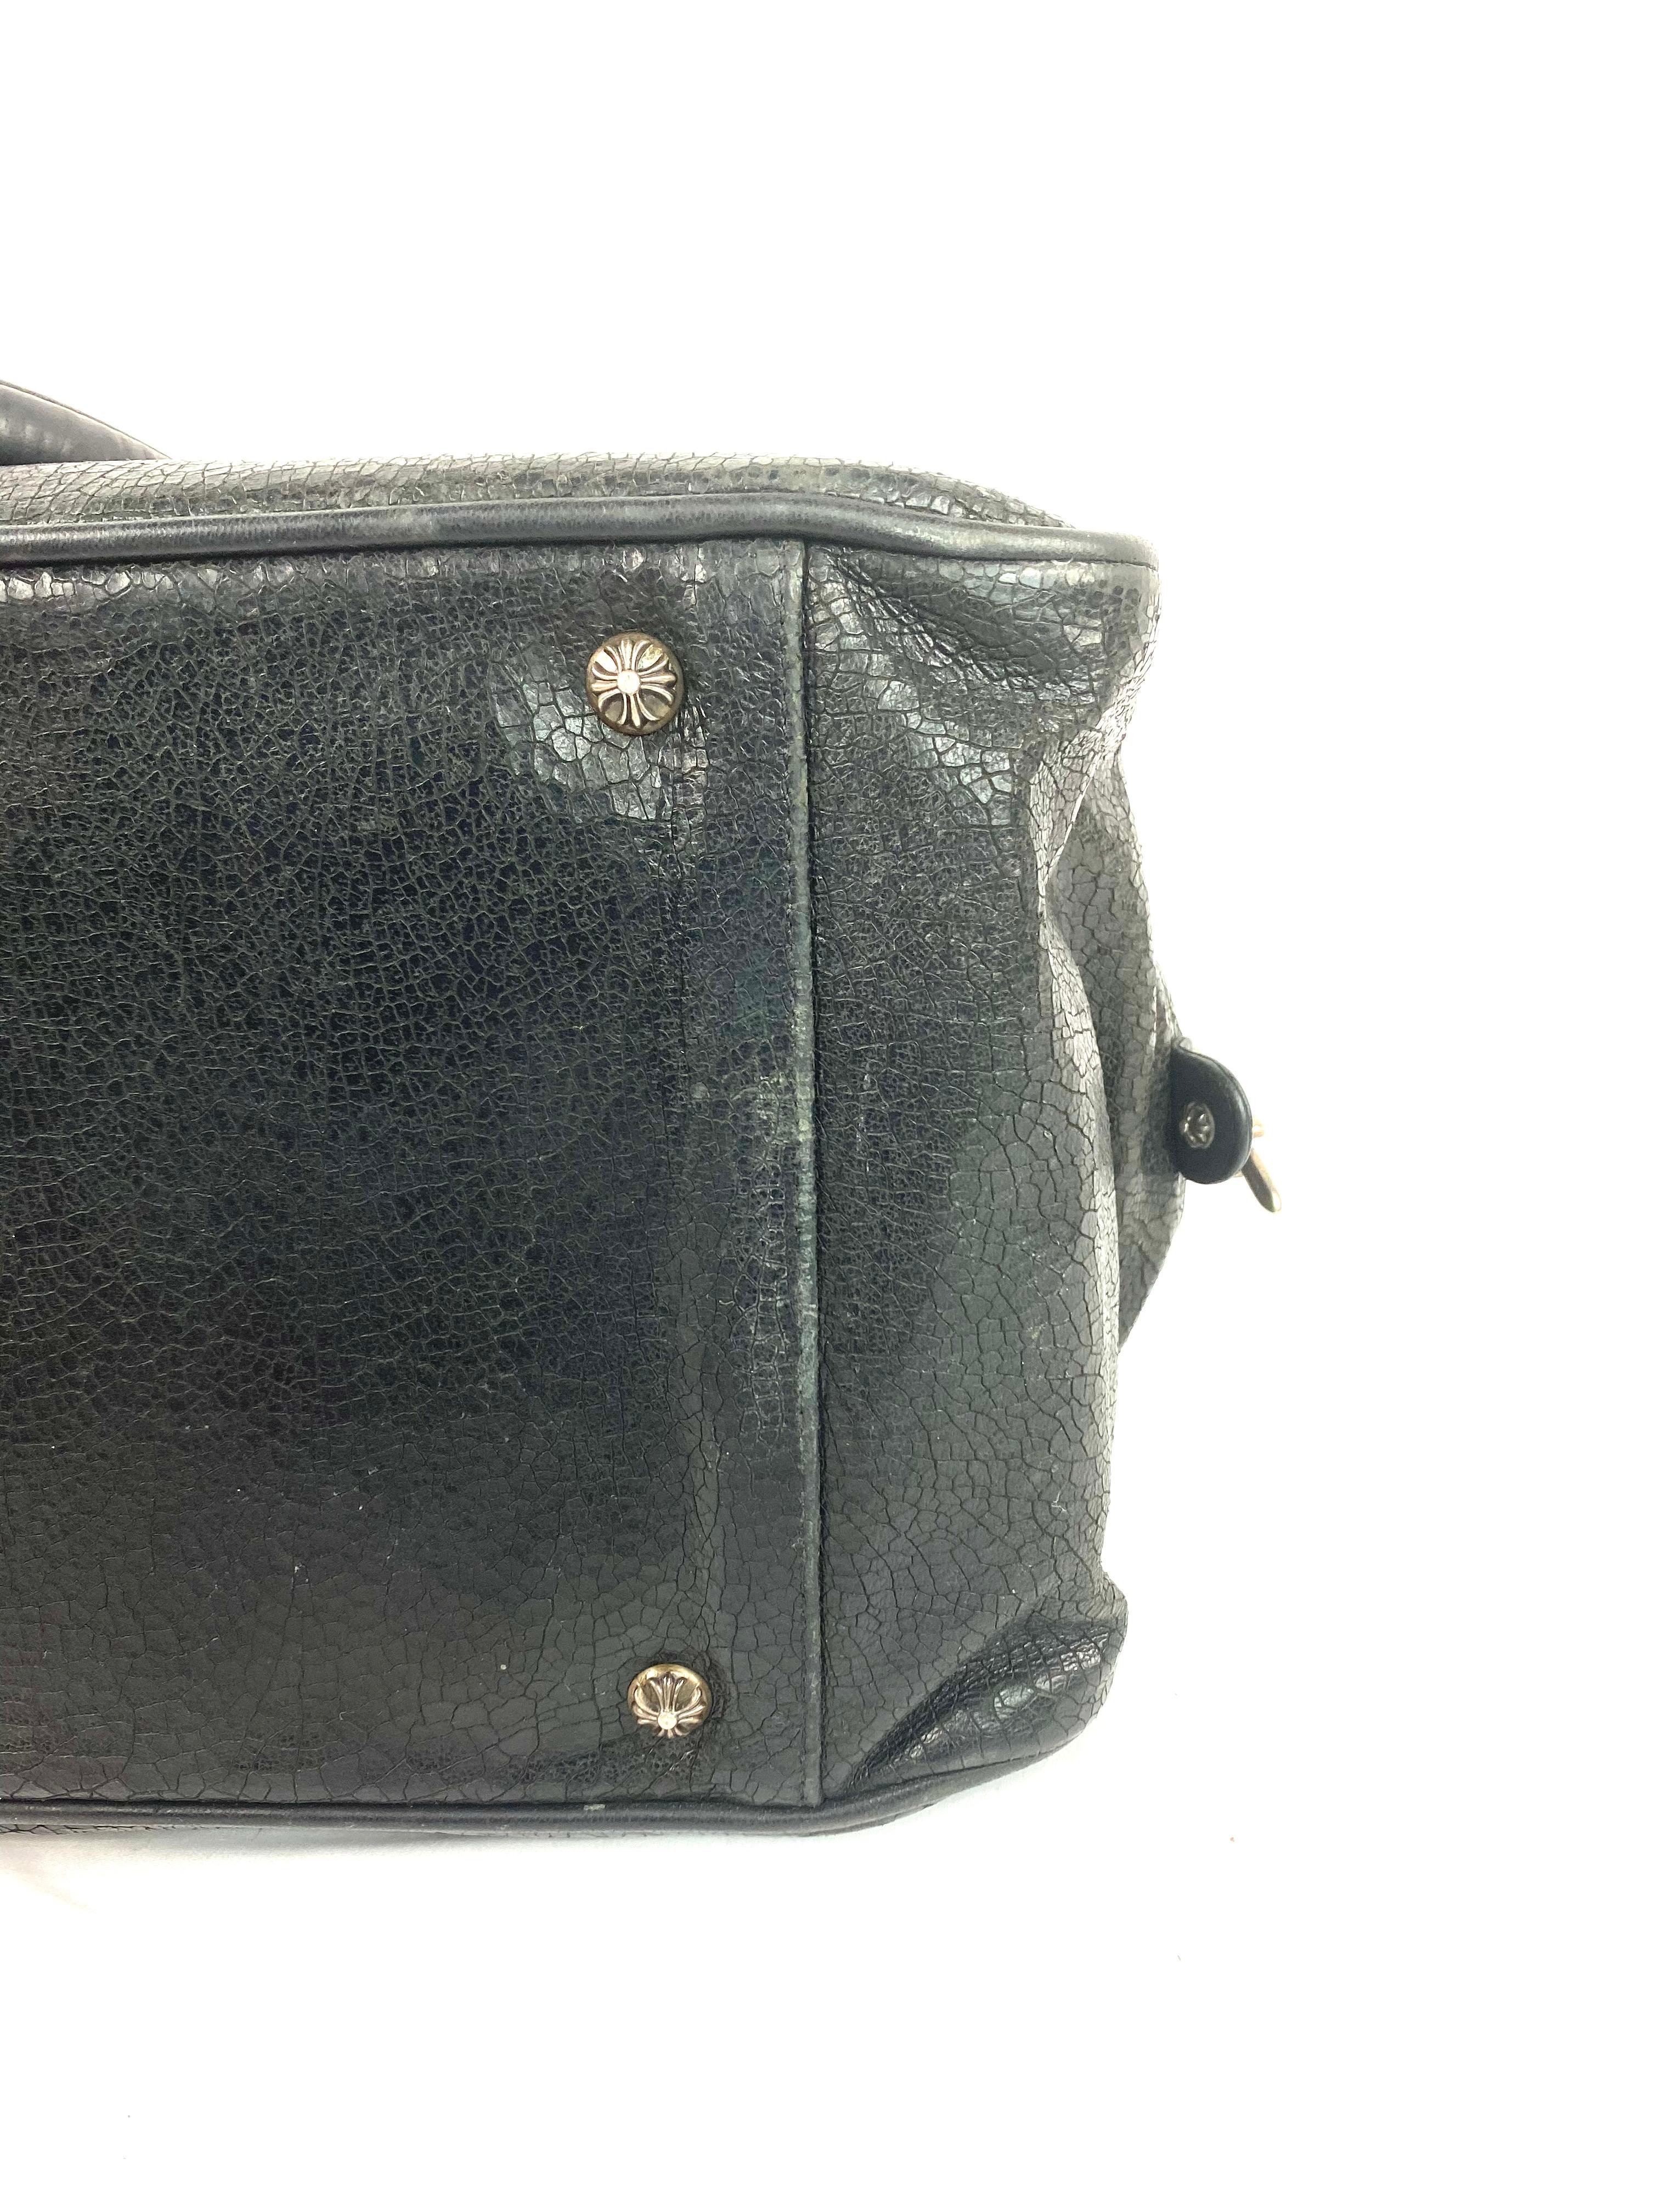 Vintage Chrome Hearts Black Leather Tote Shoulder Handbag 5